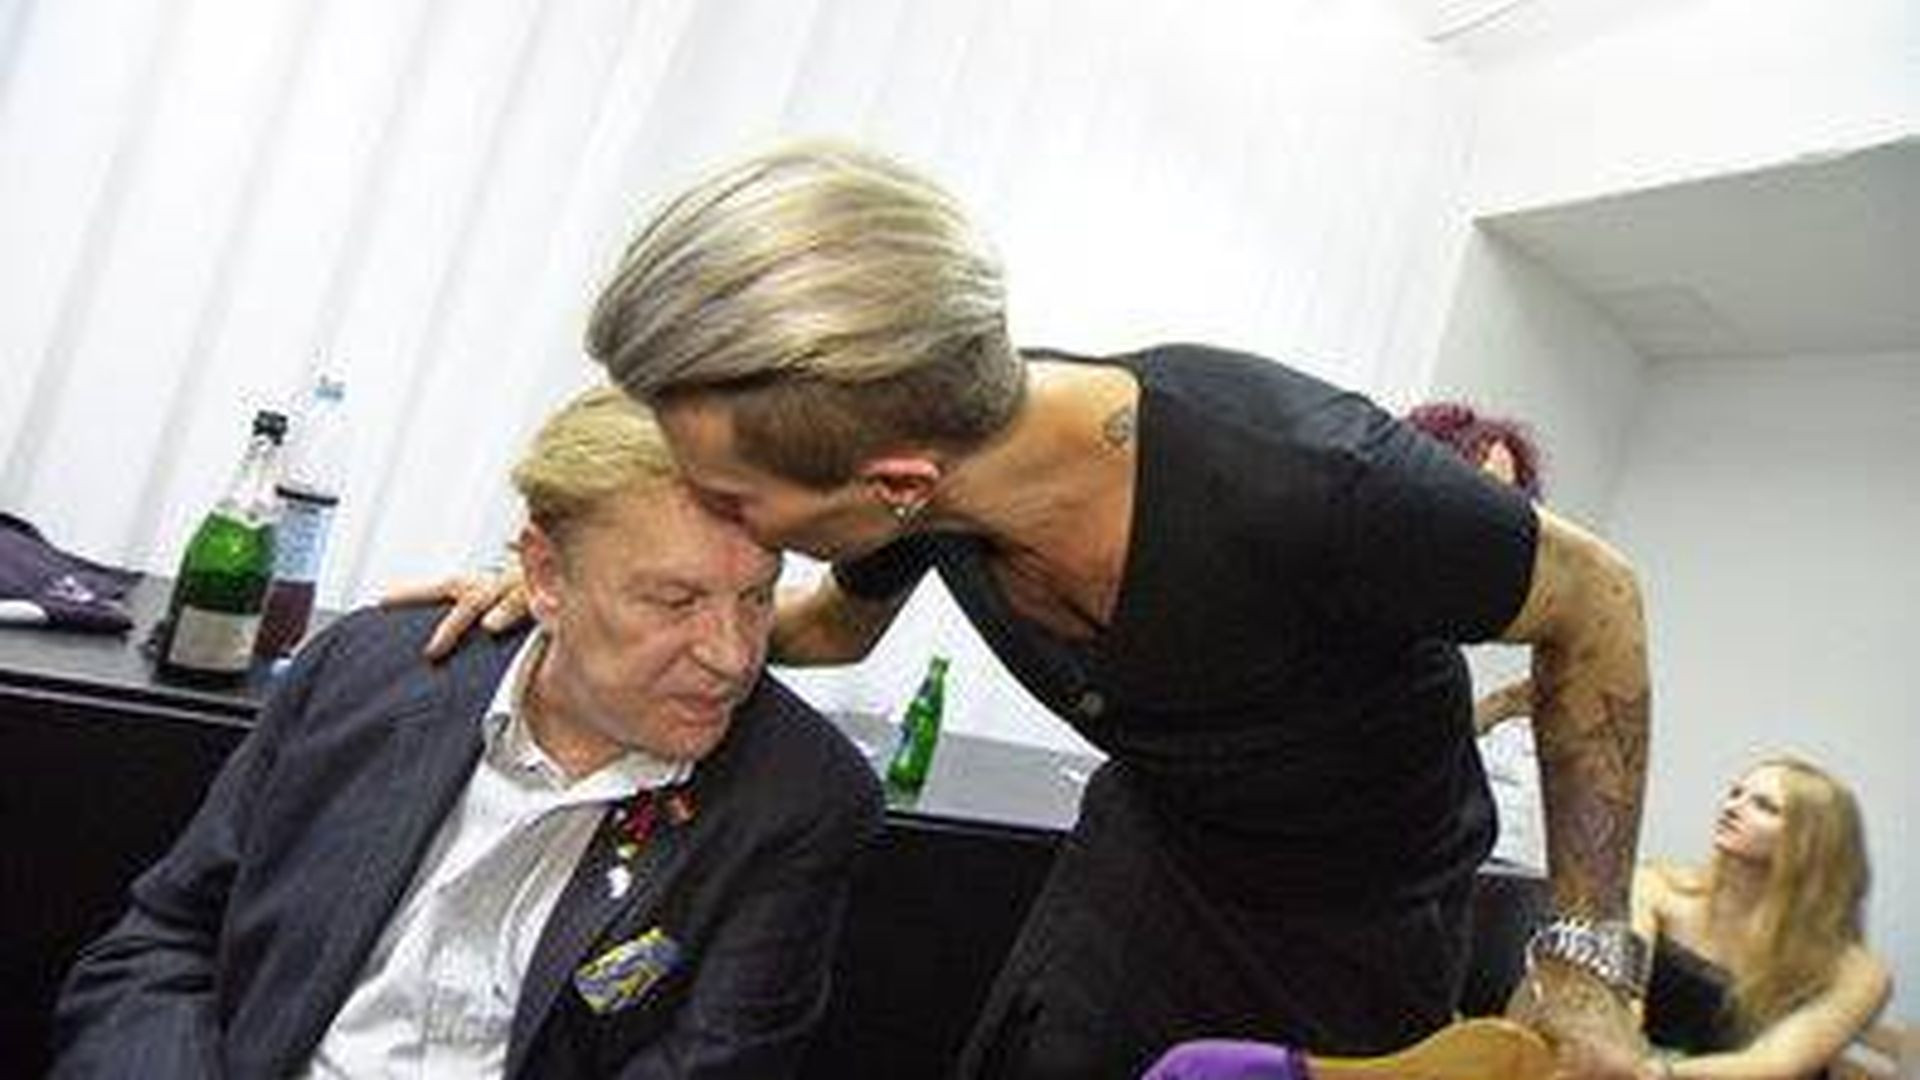 Florian Wess Hochzeit Helmut Berger
 Helmut Berger & sein Botox Boy So verrückt war